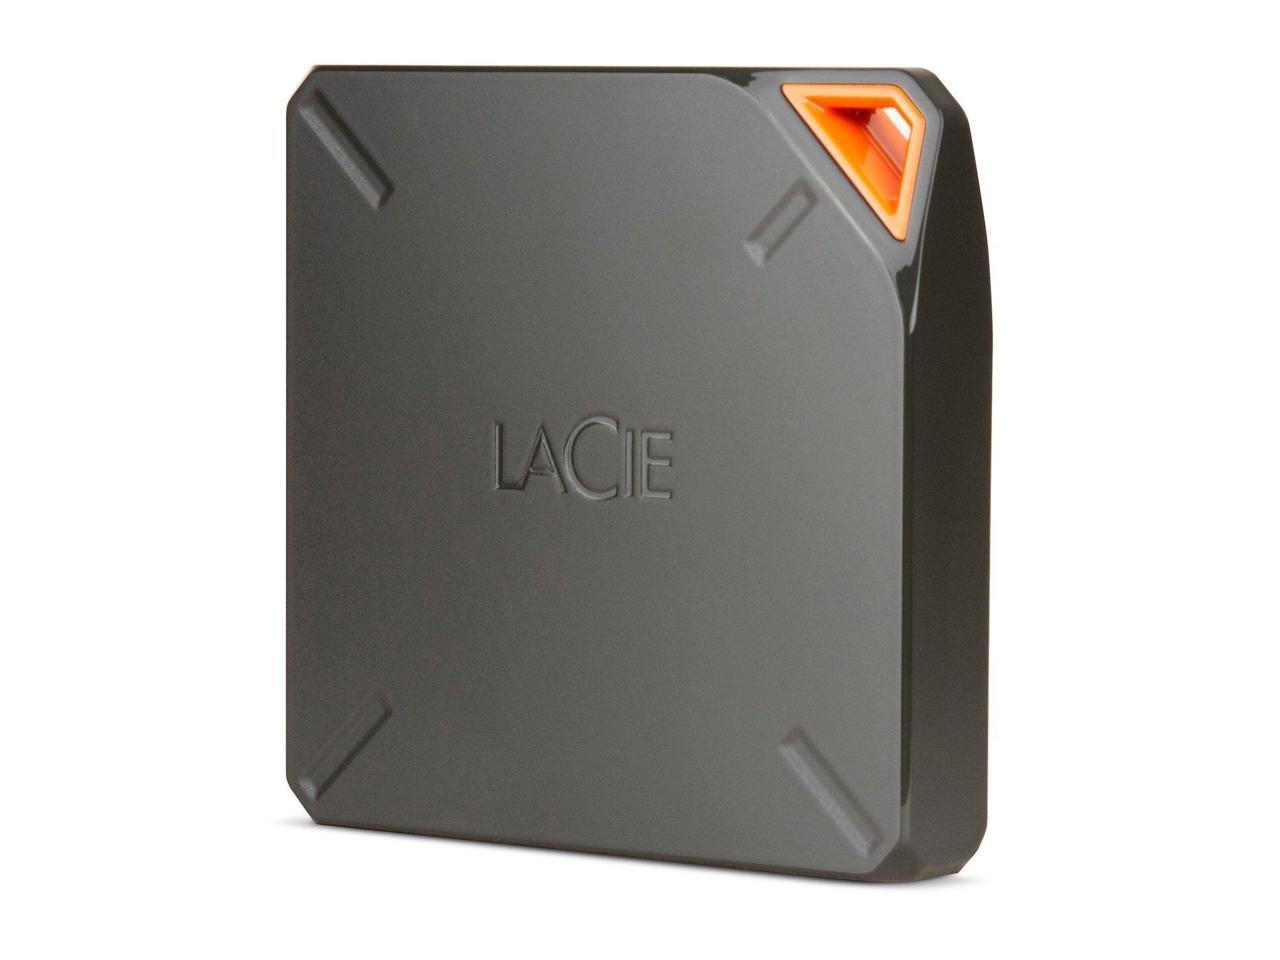 1TB Lacie Fuel Wireless Storage (STFL1000200)